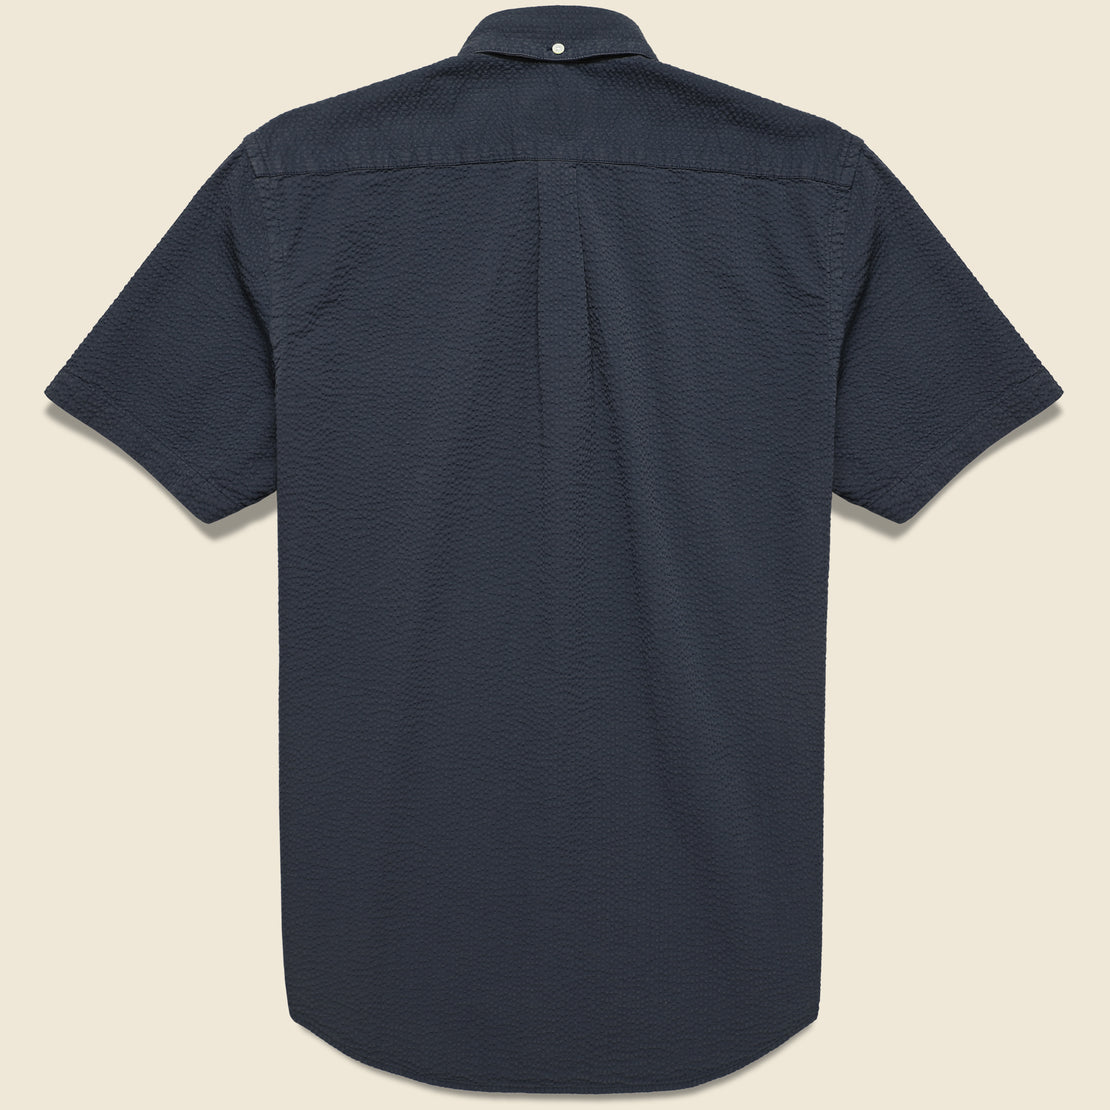 Atlantico Seersucker Shirt - Navy - Portuguese Flannel - STAG Provisions - Tops - S/S Woven - Seersucker